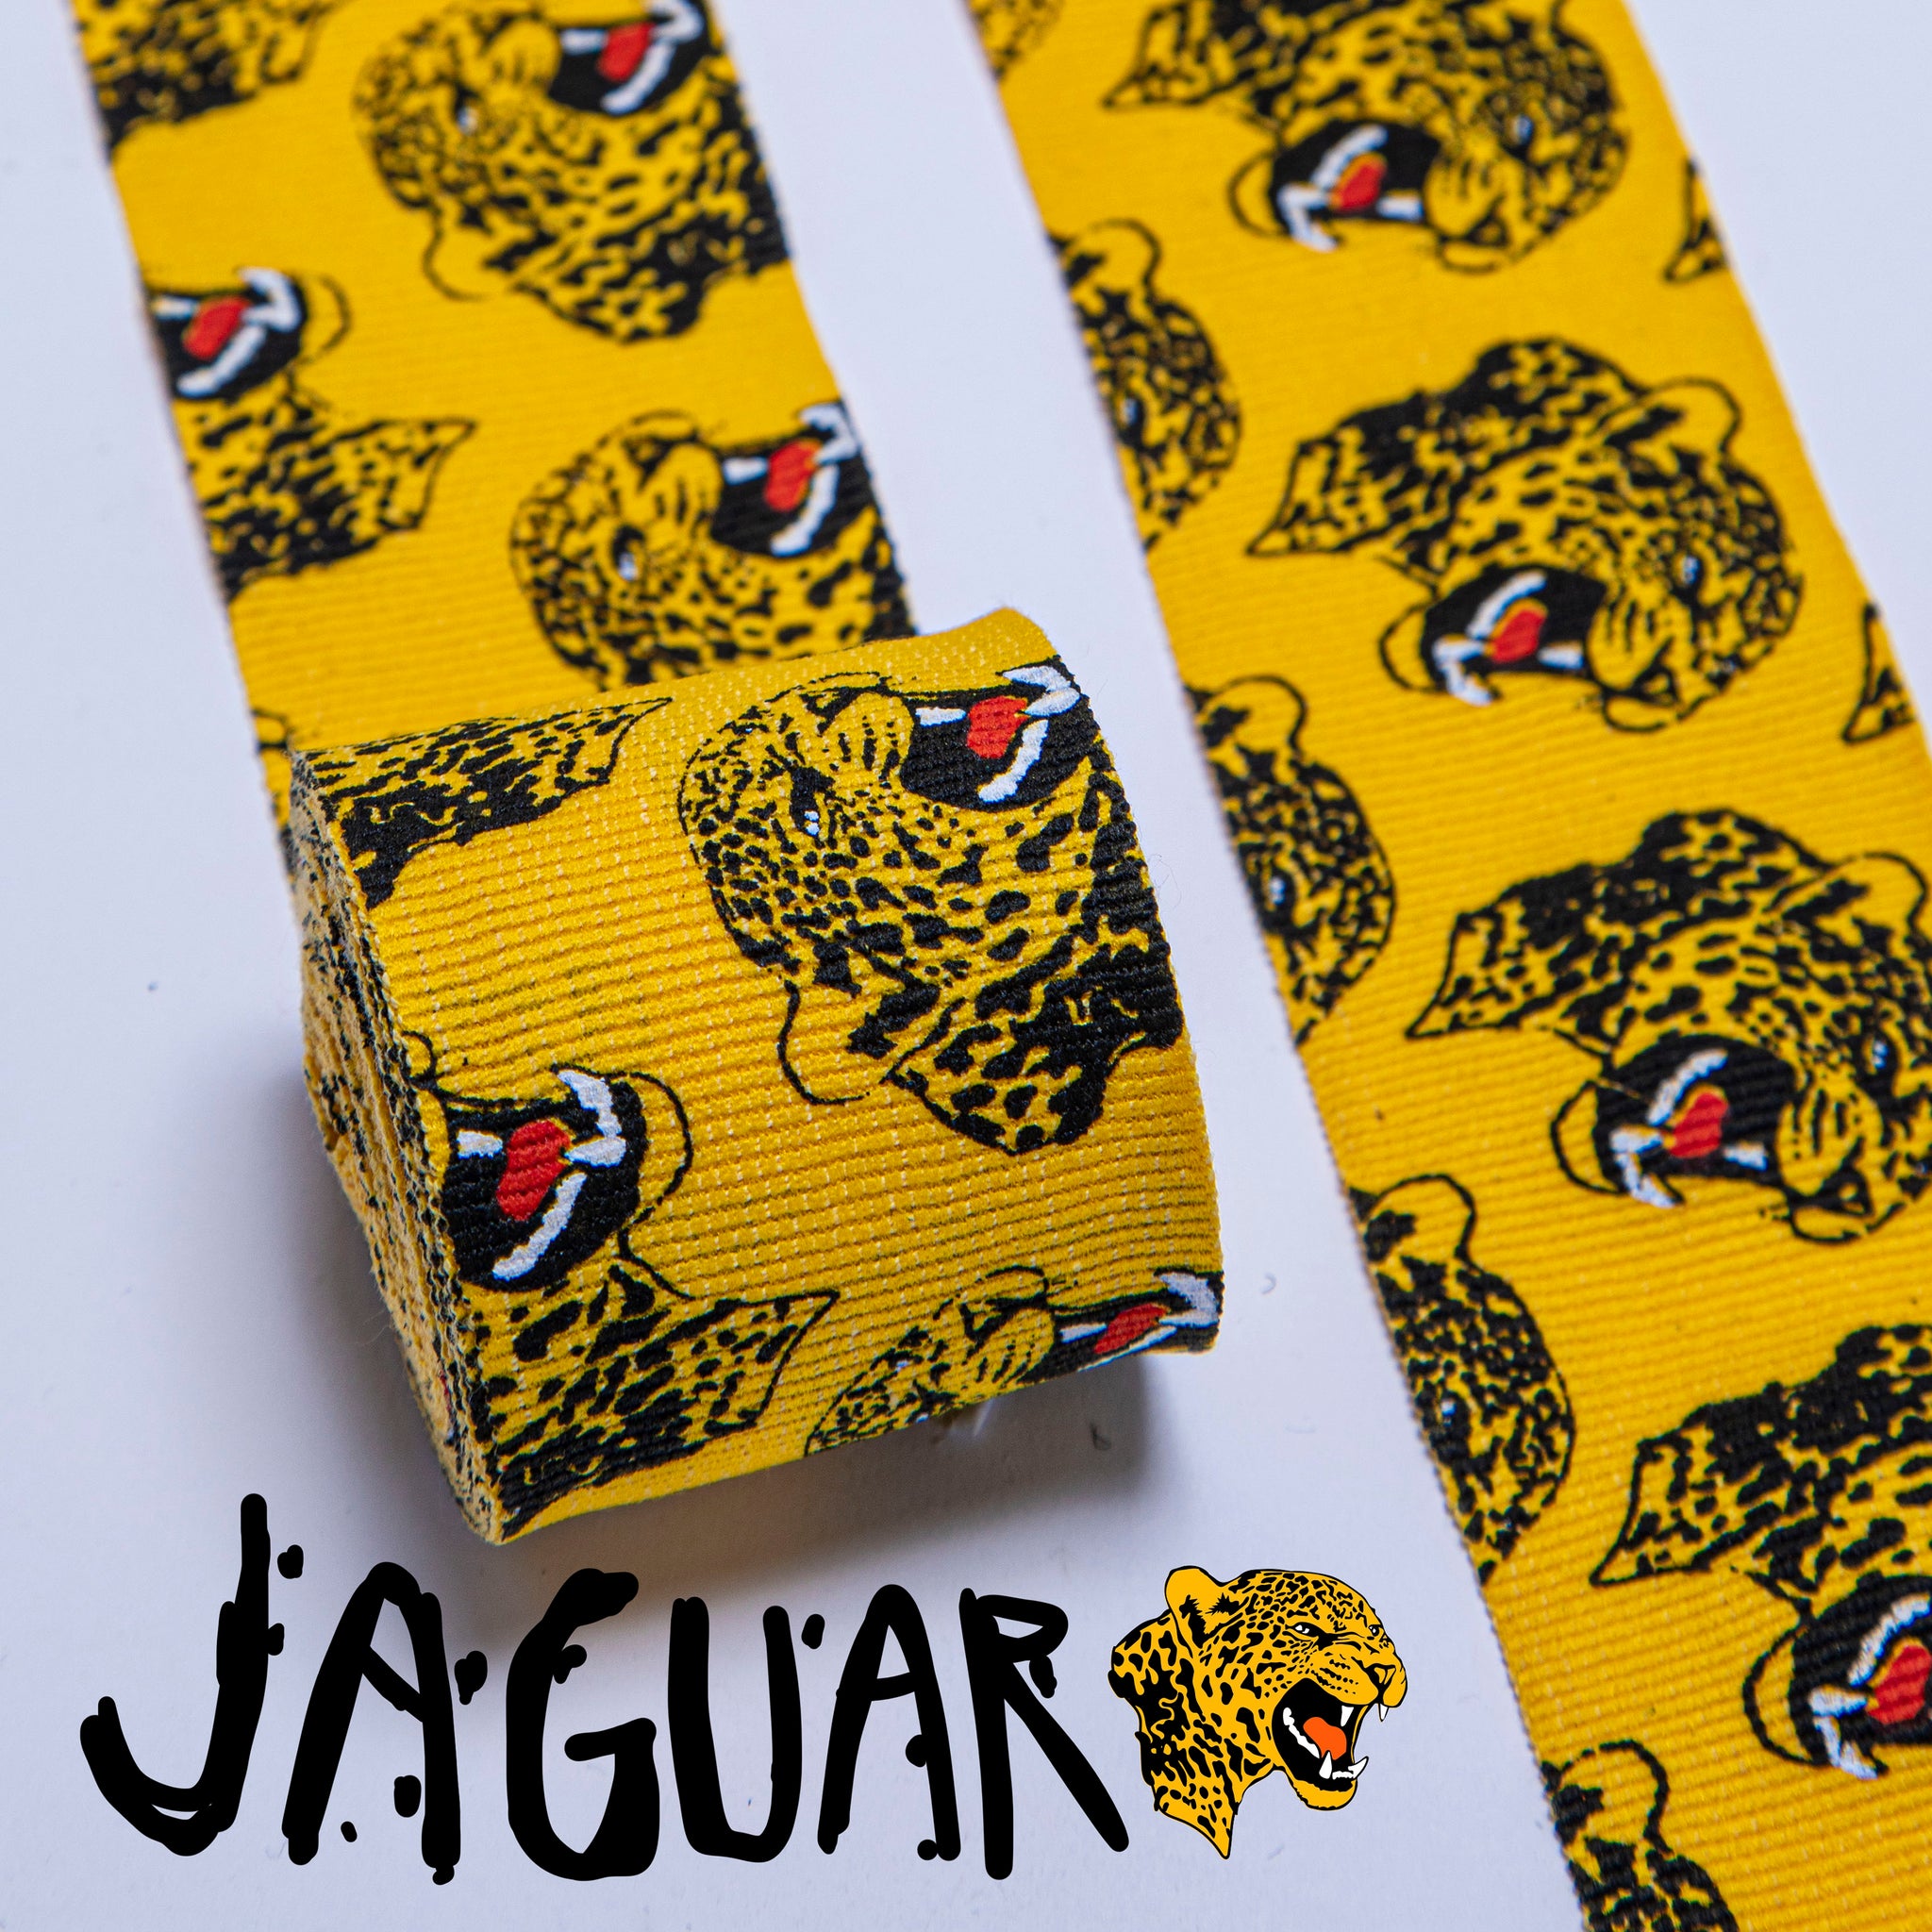 Jaguar Hand Wraps